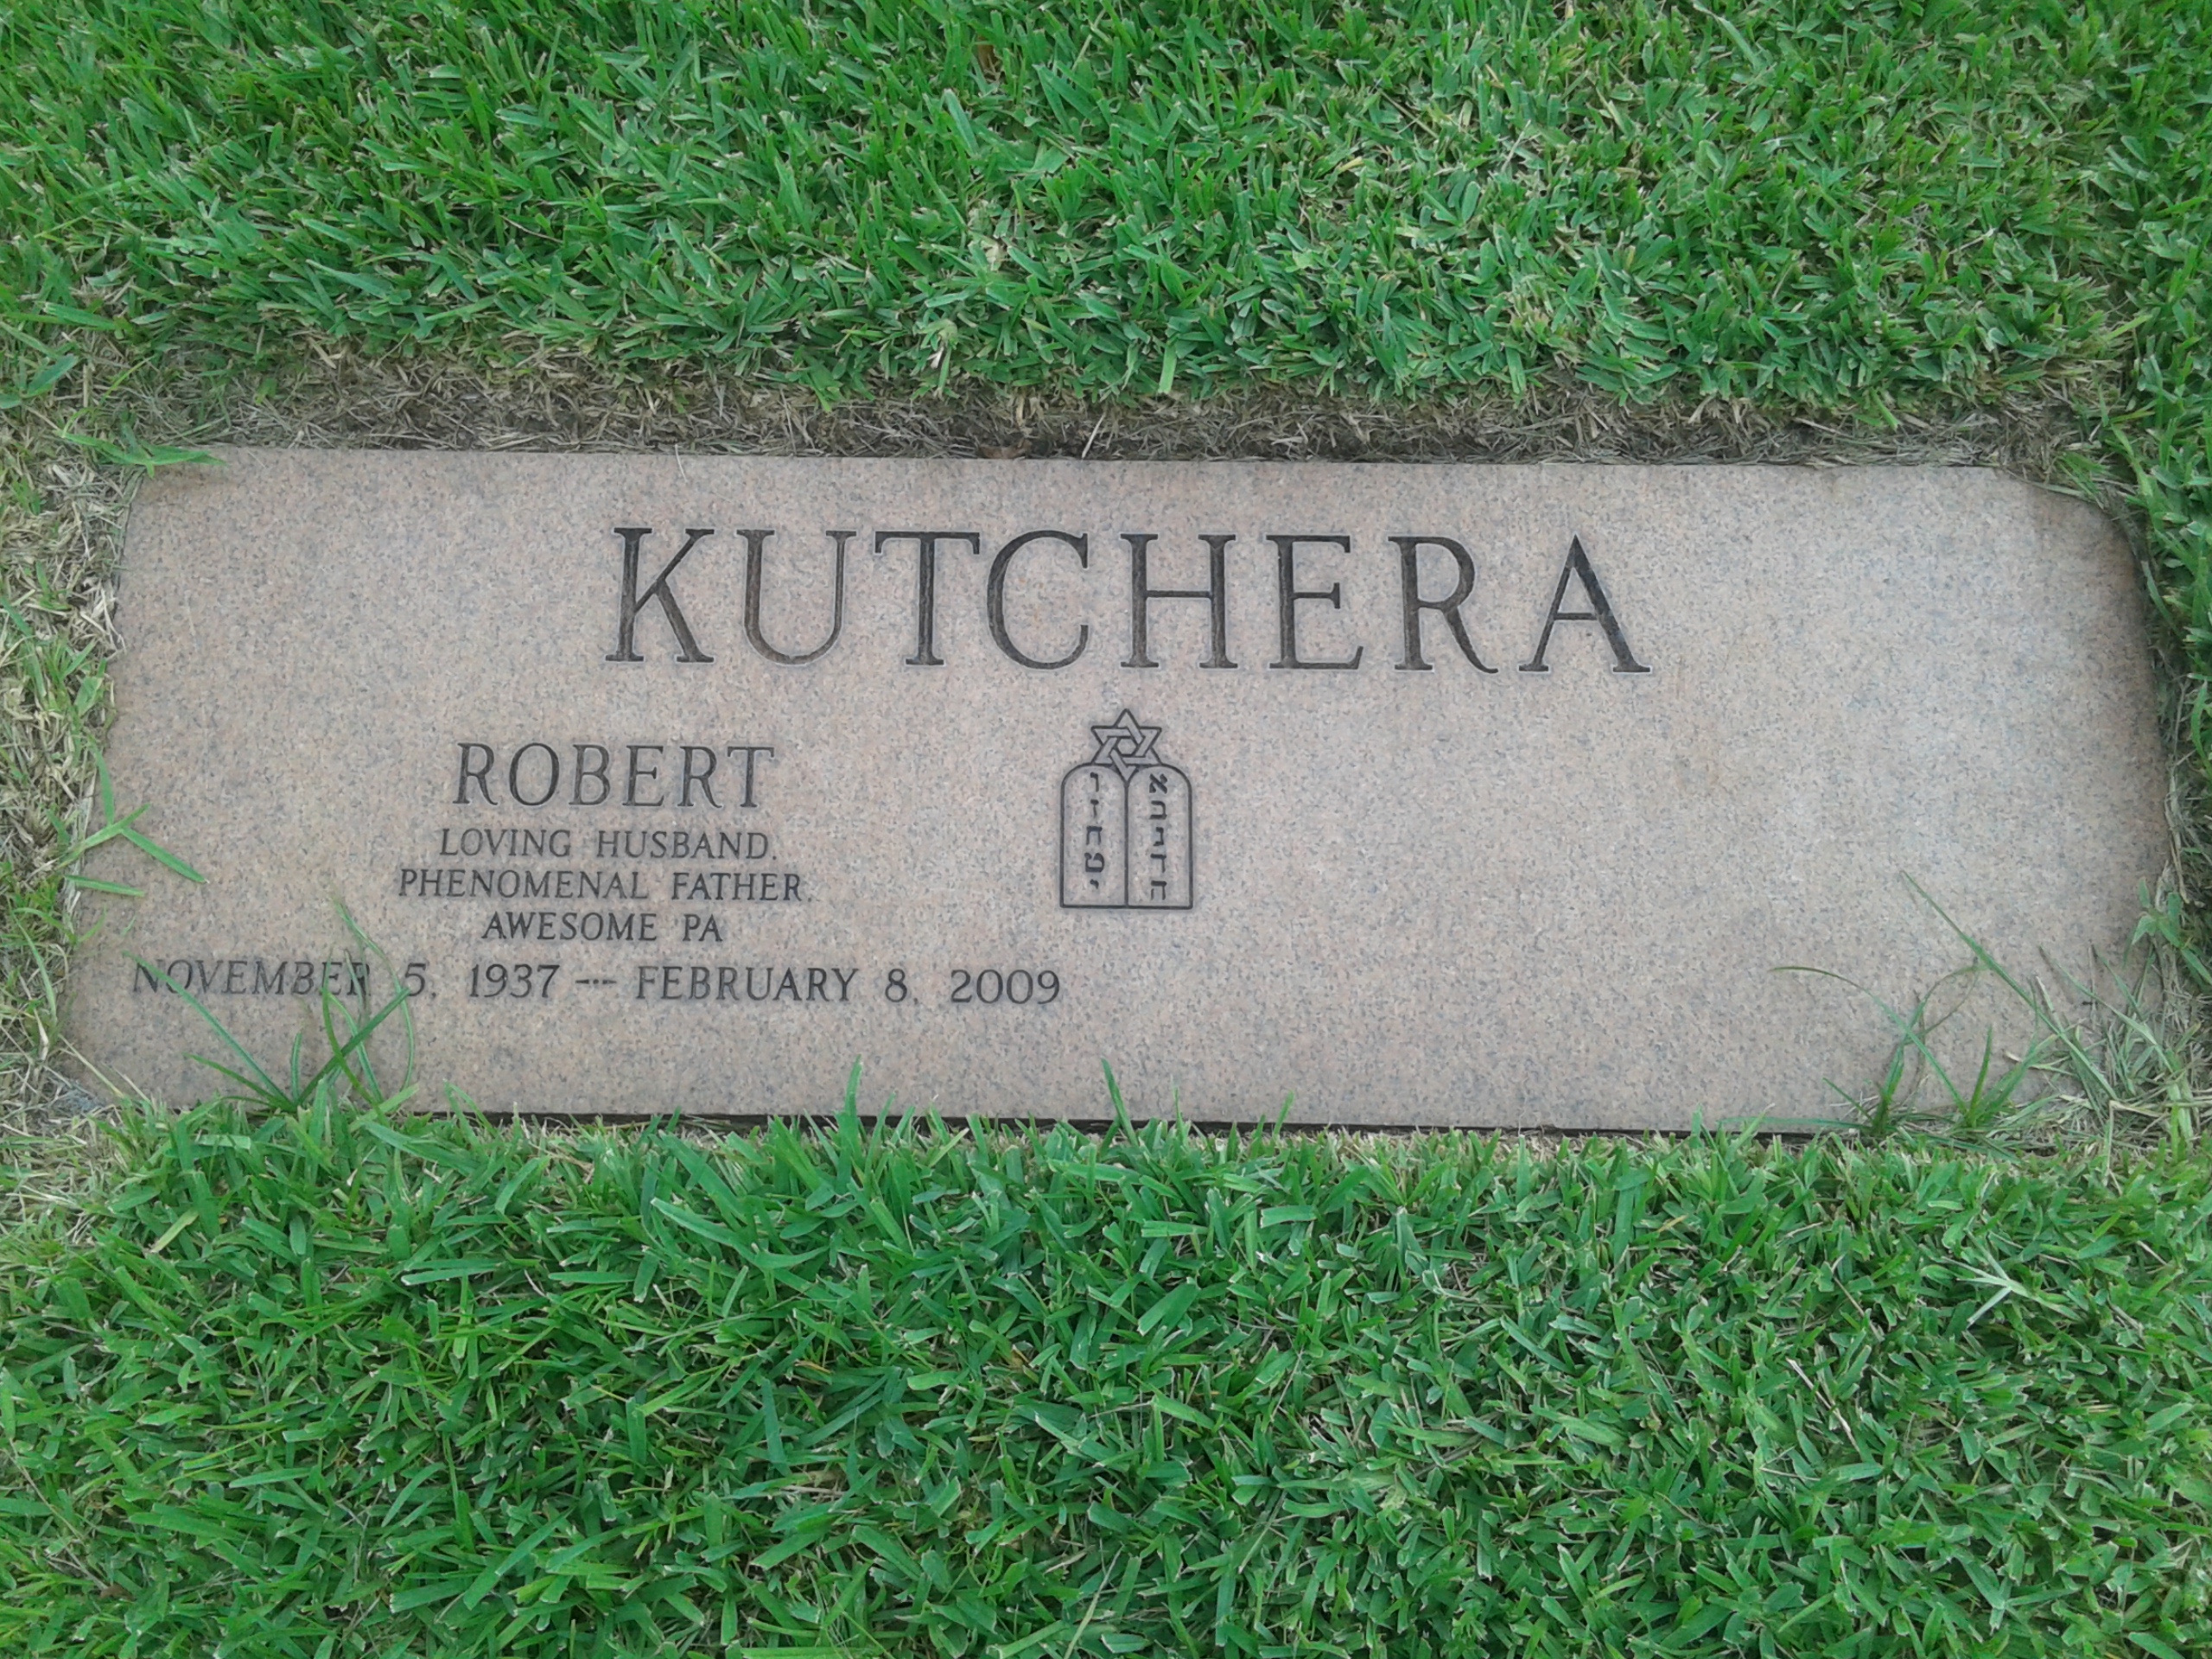 Robert Kutchera